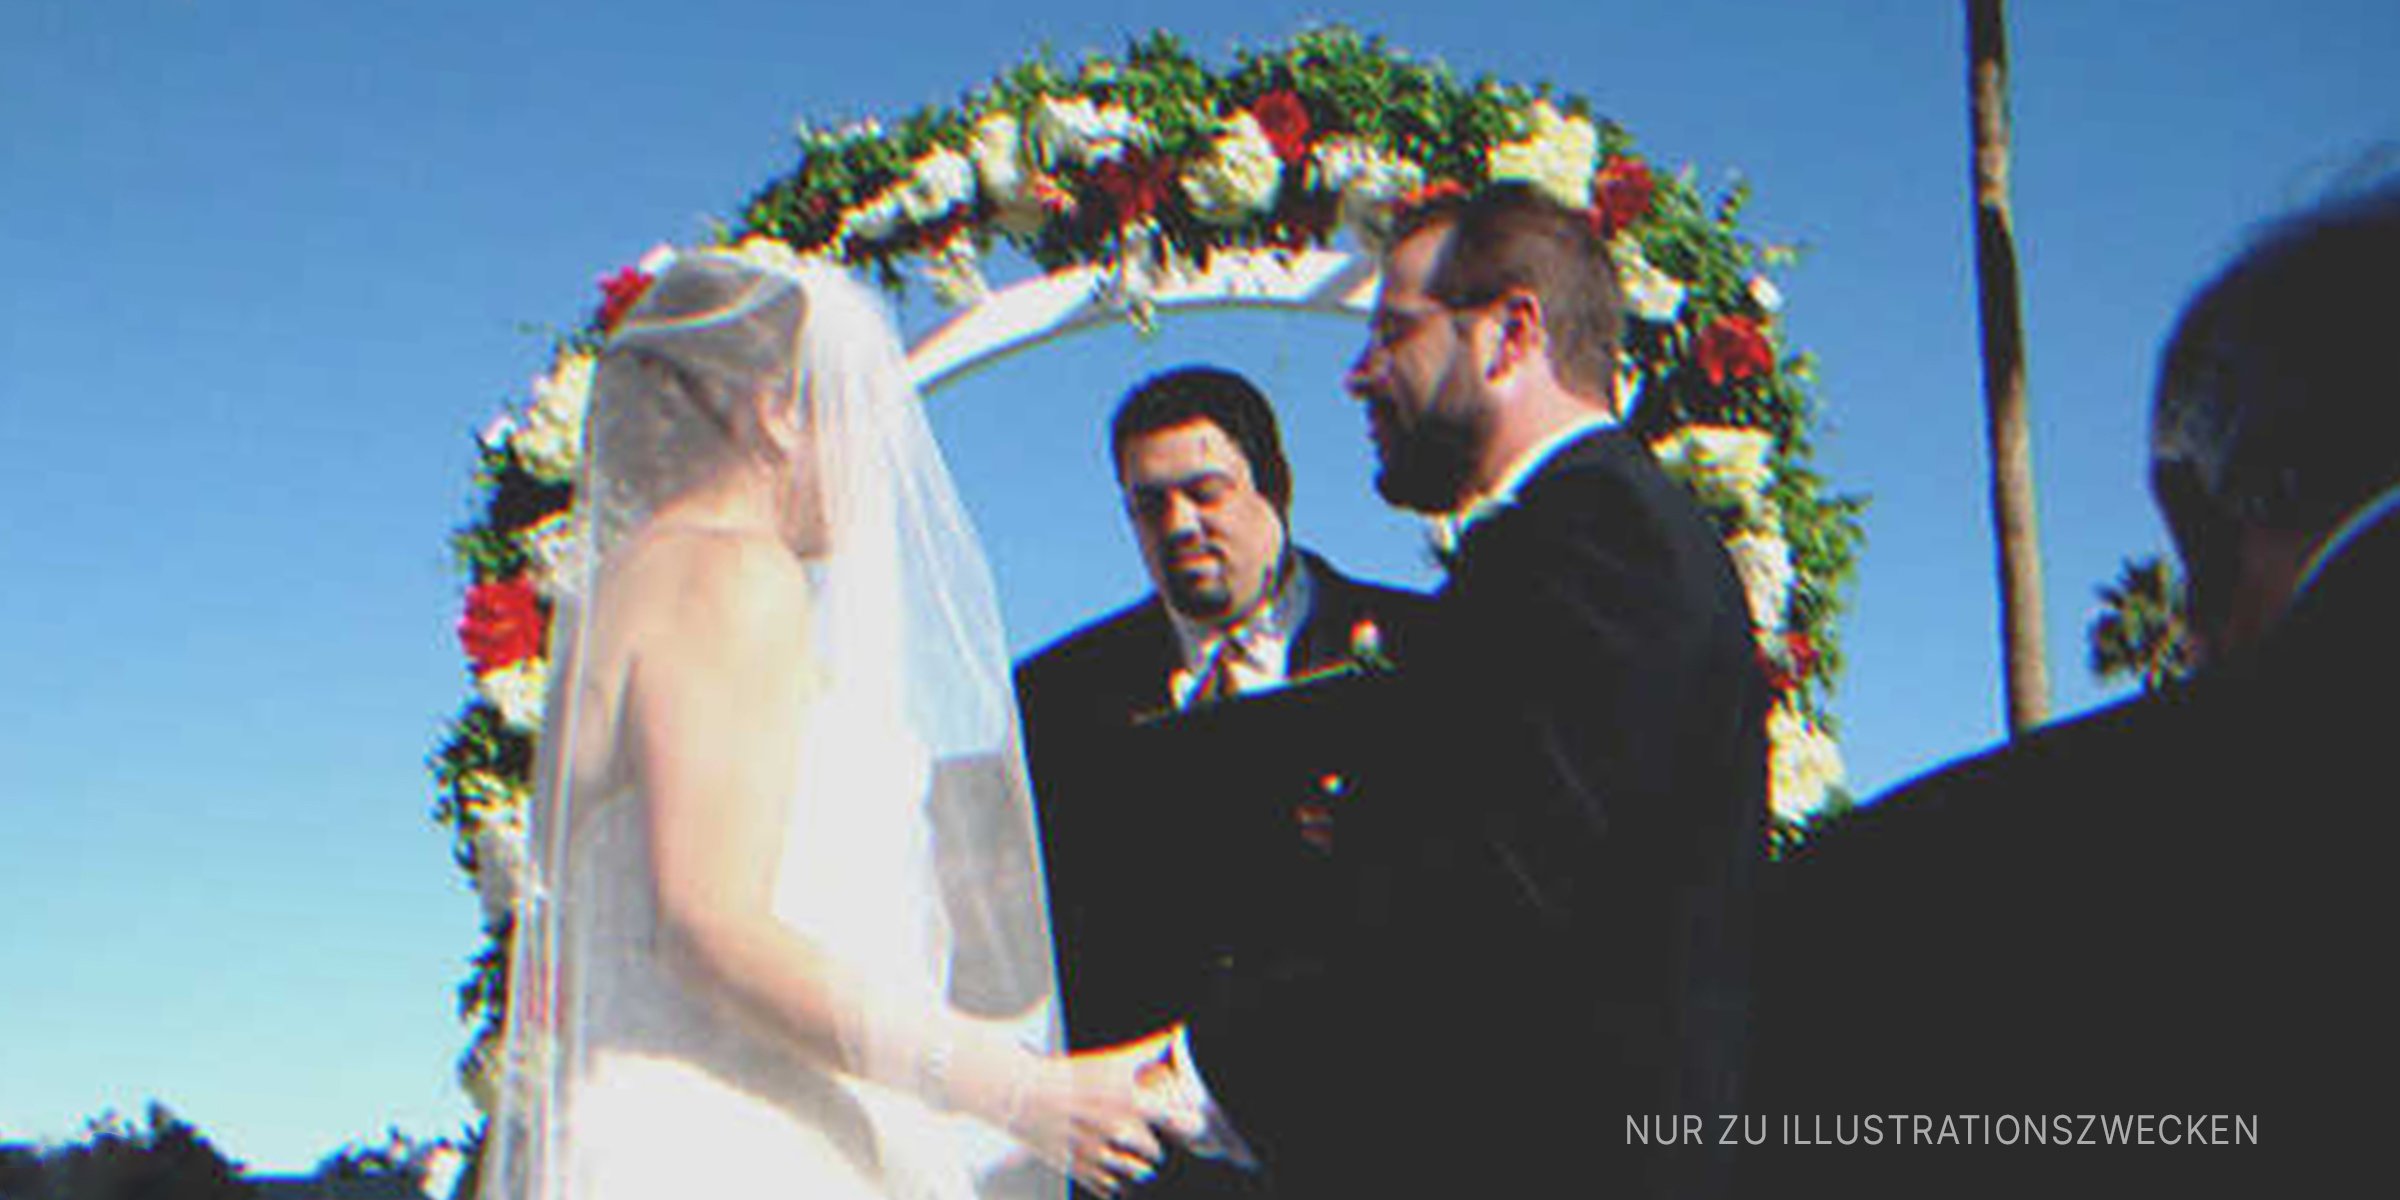 Mann und Frau geben sich das Ja-Wort. | Quelle: Flickr / CJ Sorg (CC BY-SA 2.0)